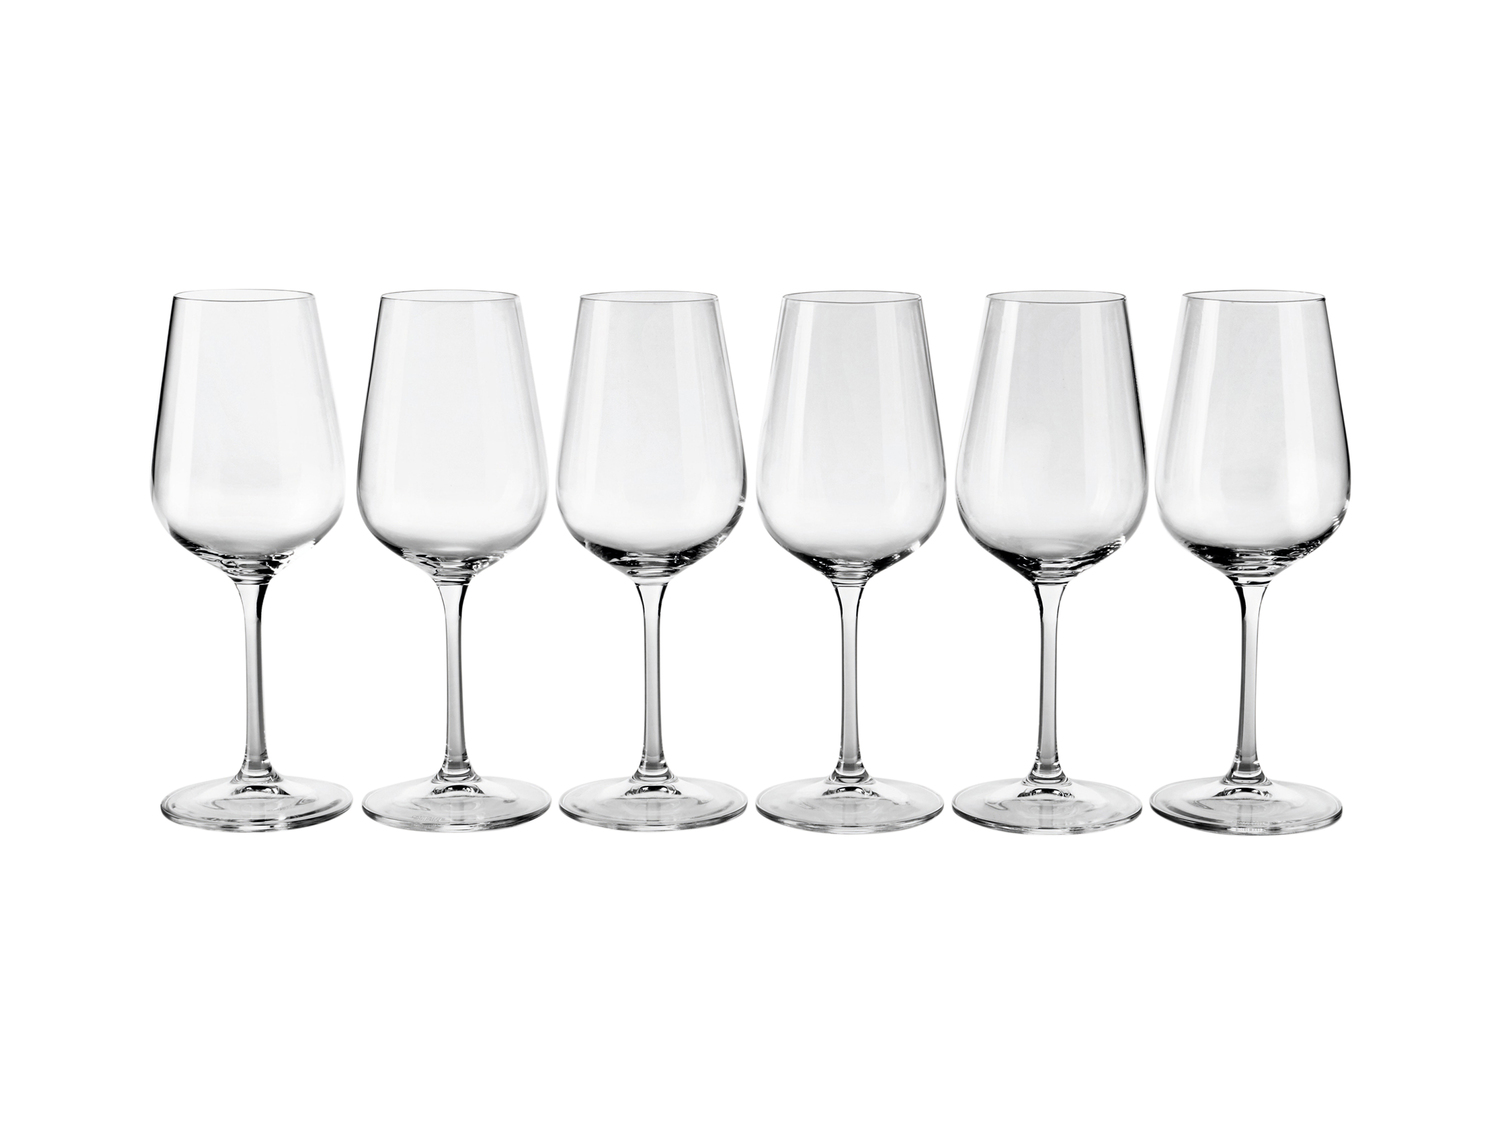 Bicchieri Ernesto, le prix 9.99 &#8364; 
6 pezzi 
- Per spumante: 215 ml
- ...